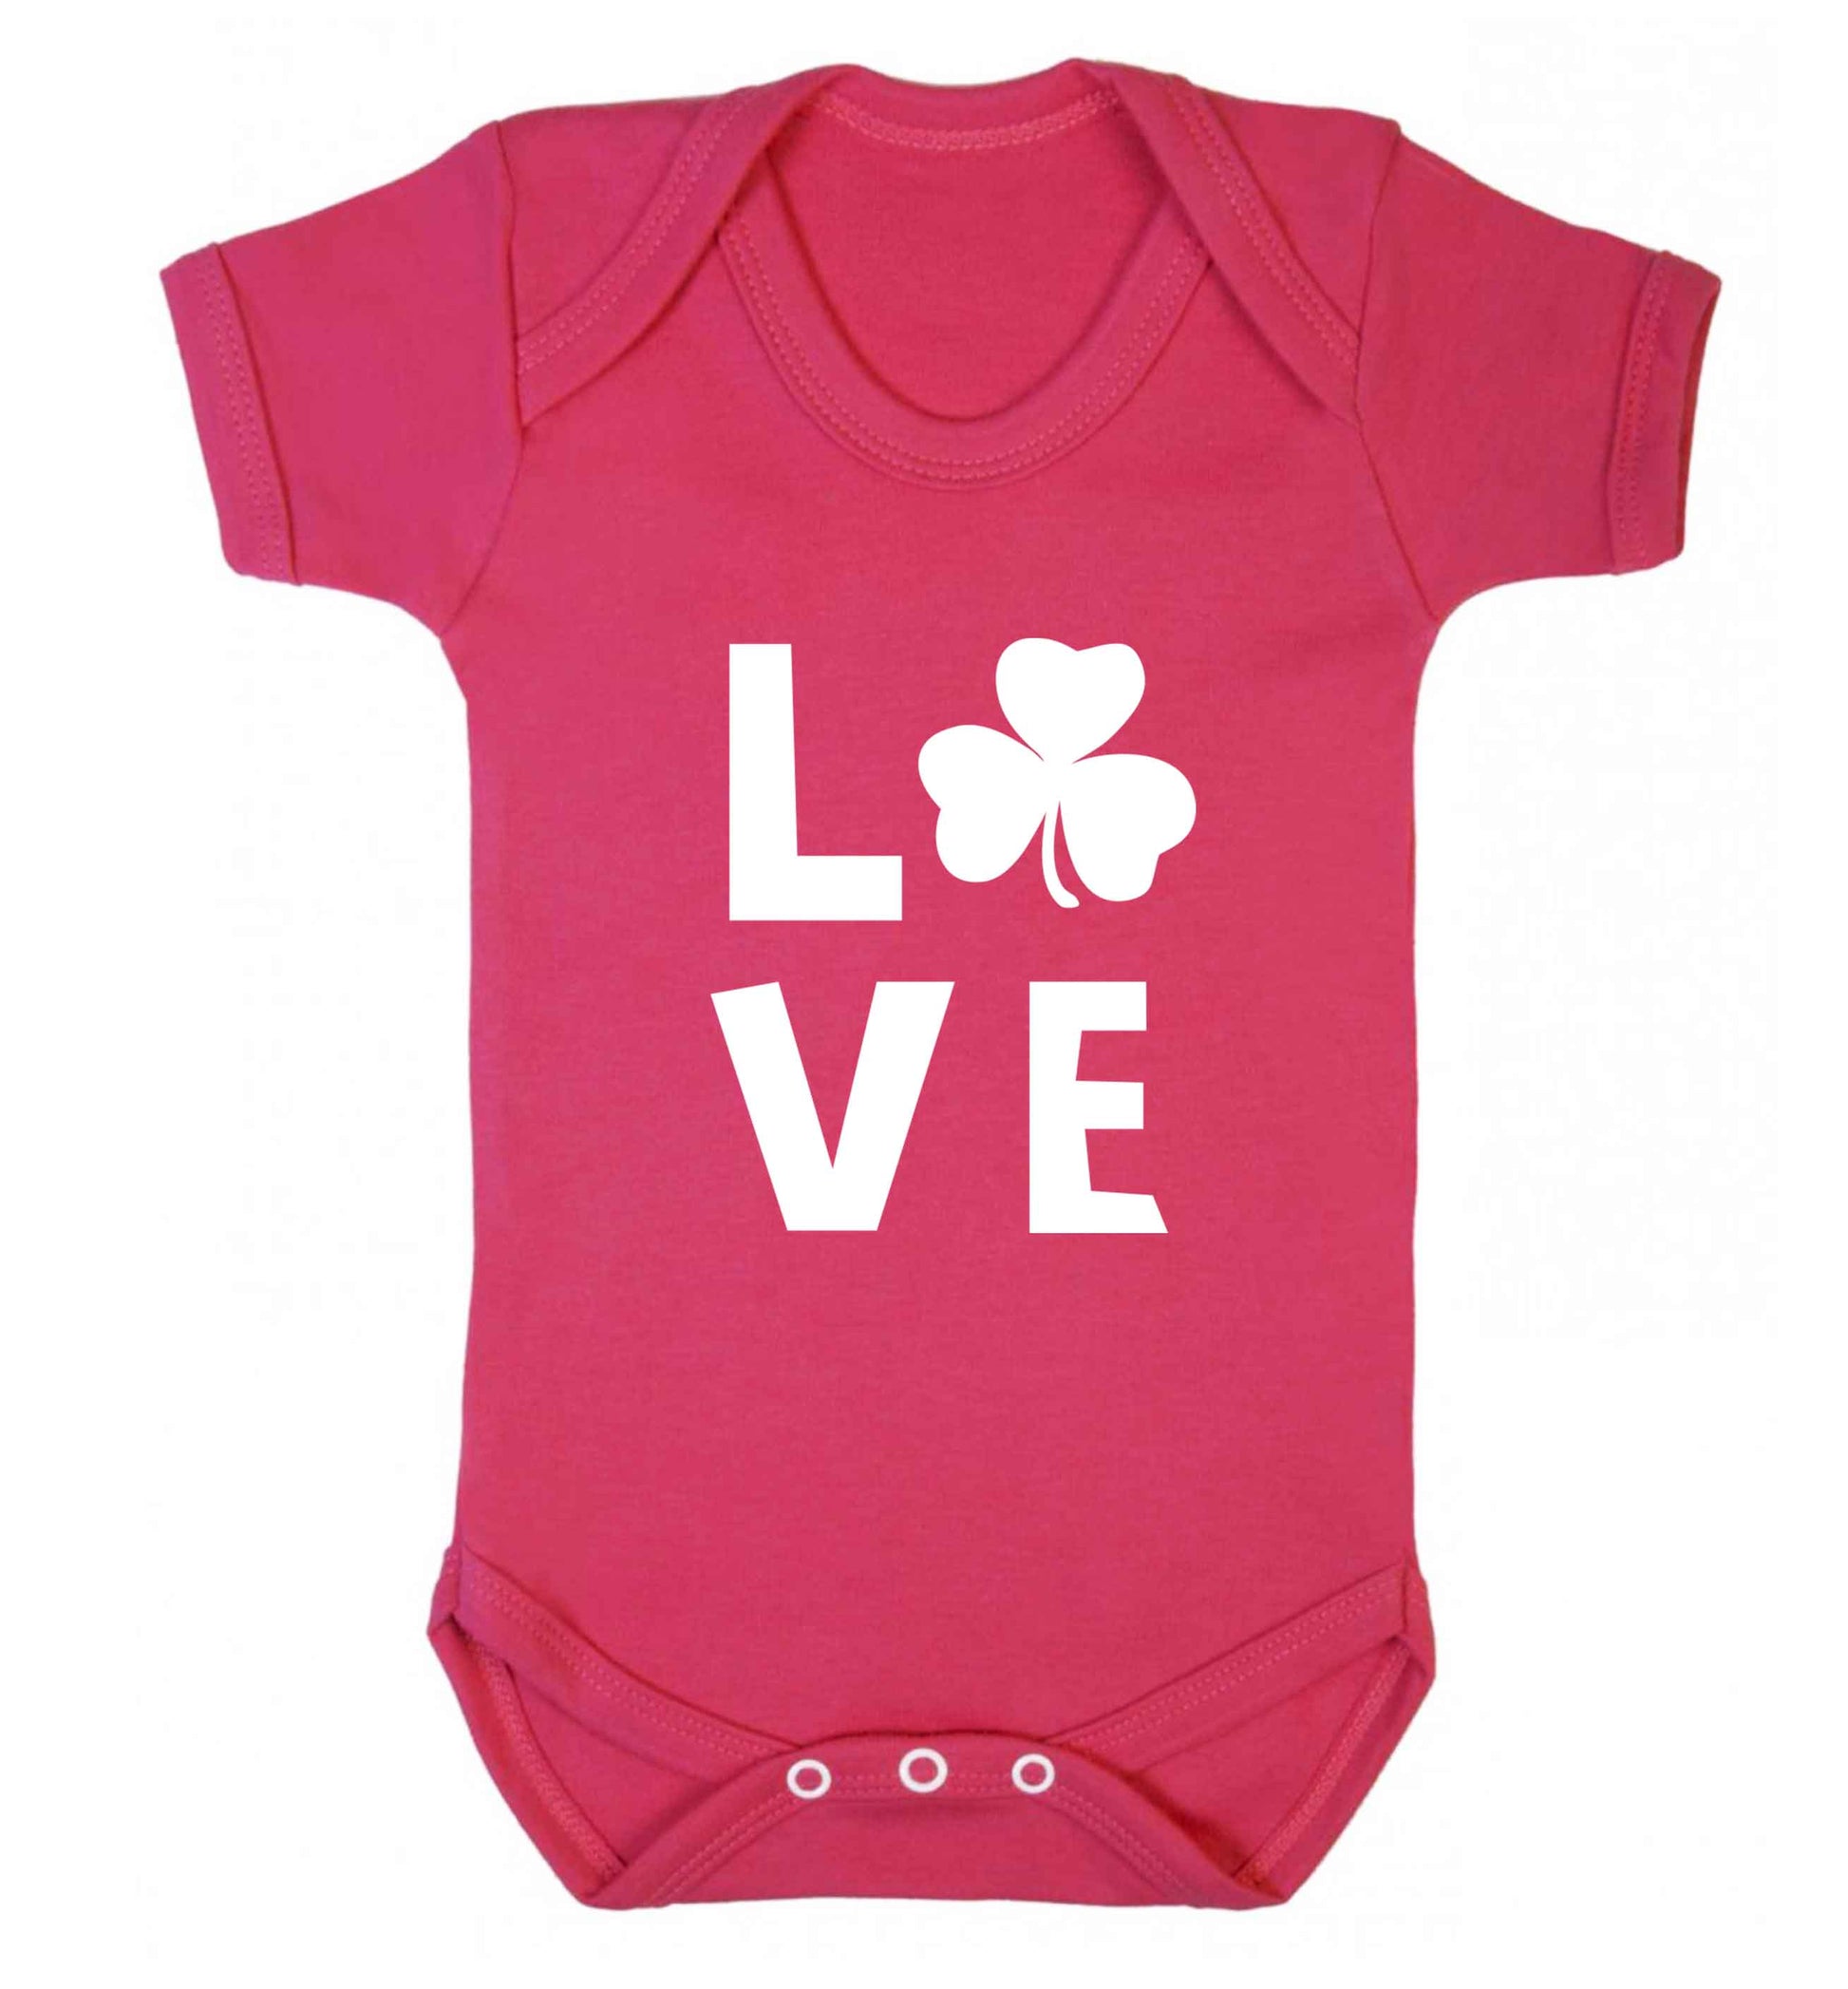 Shamrock love baby vest dark pink 18-24 months